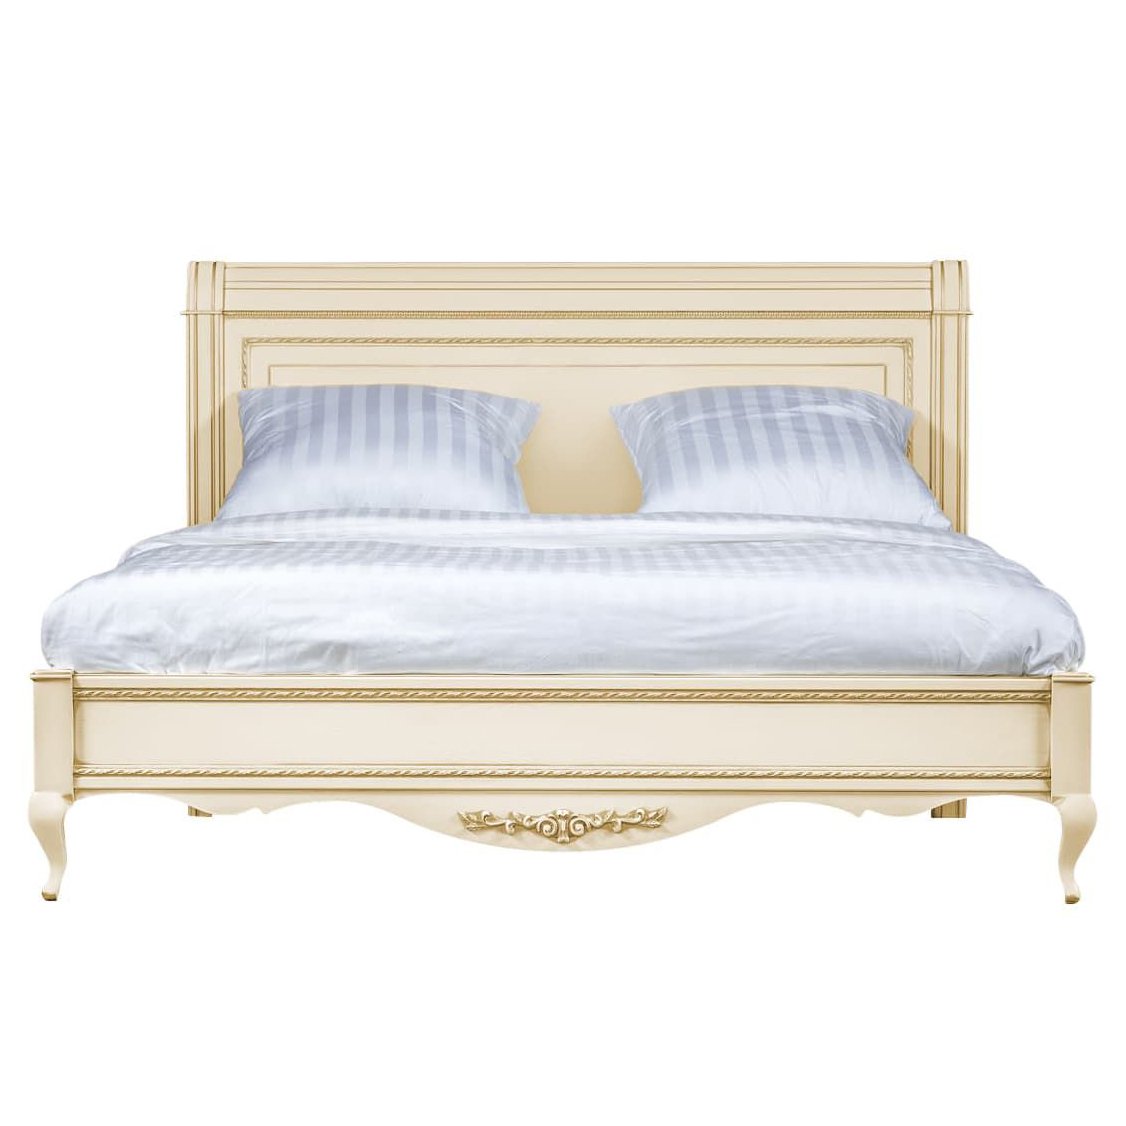 Кровать Timber Неаполь, двуспальная 180x200 см, цвет: ваниль с золотом (Т-538/VO)Т-538